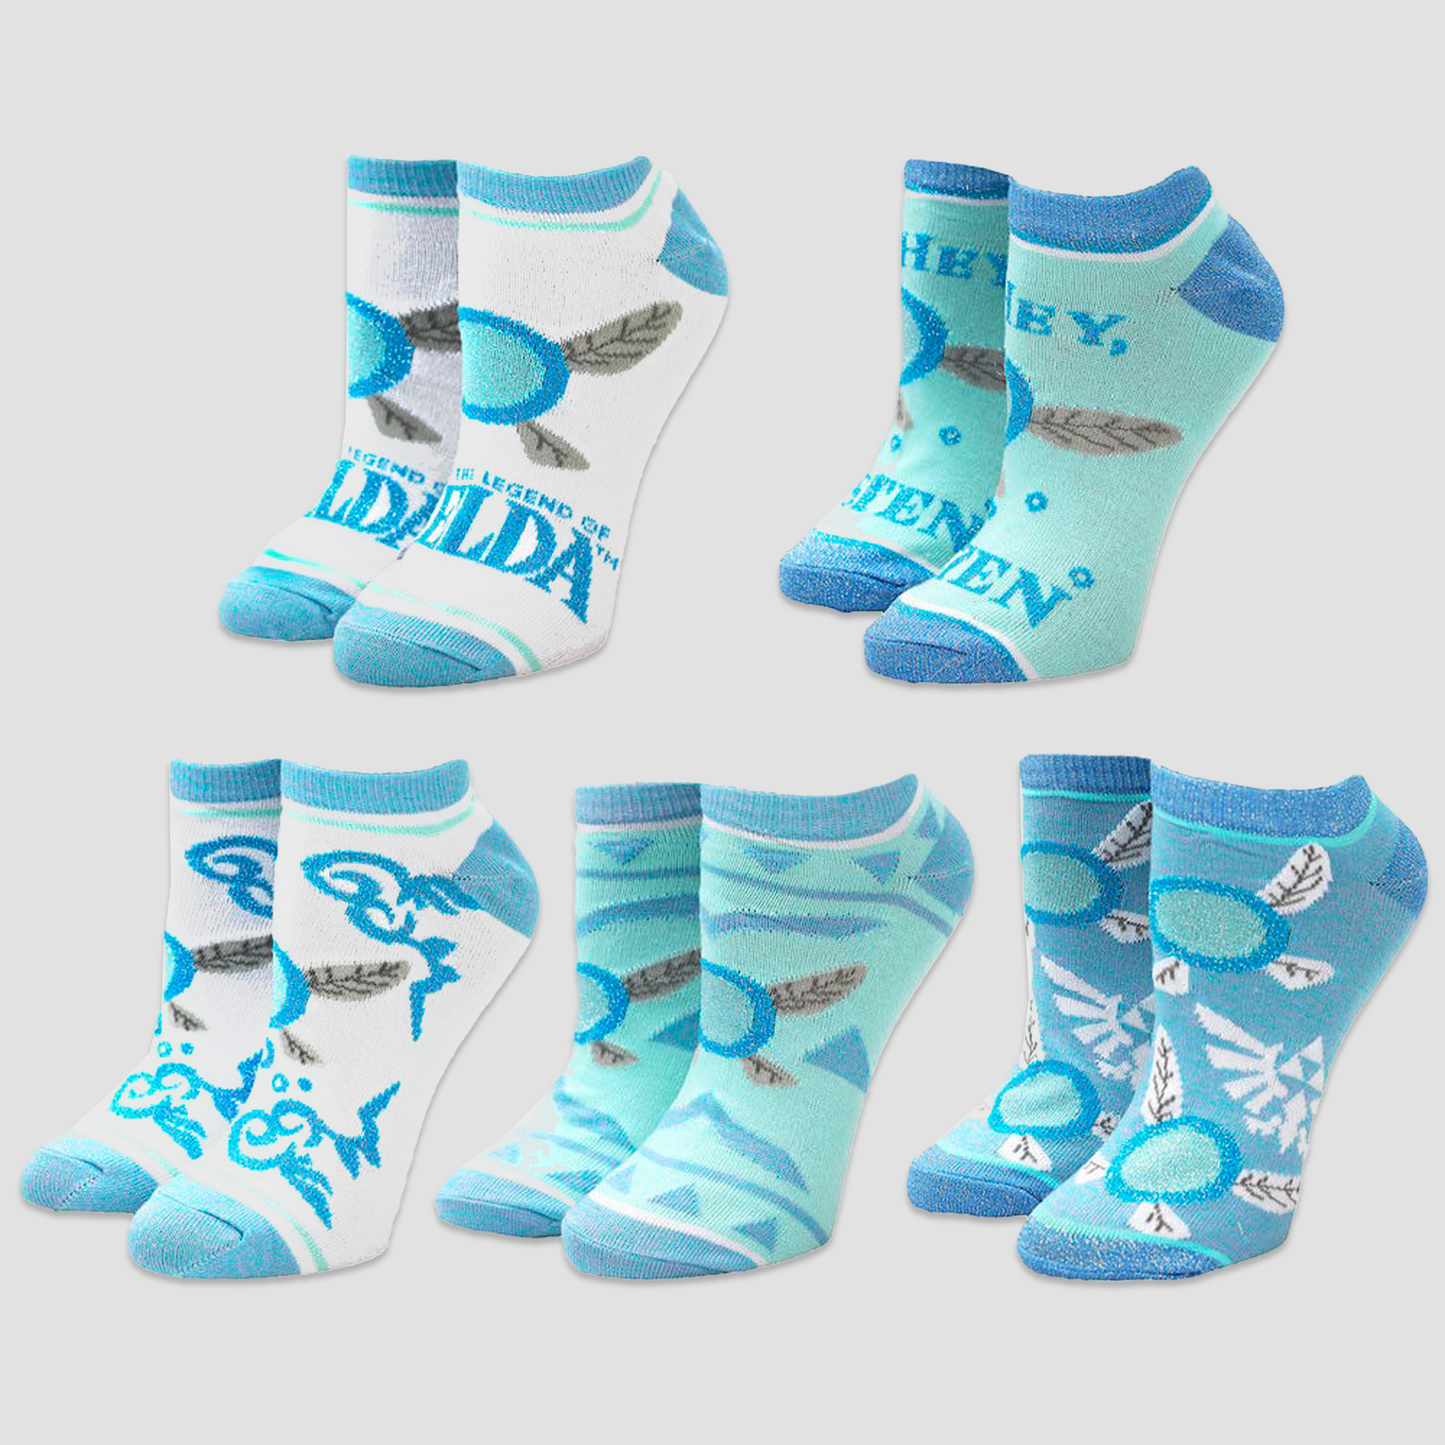 Load image into Gallery viewer, Navi The Legend of Zelda Ankle Socks Set
